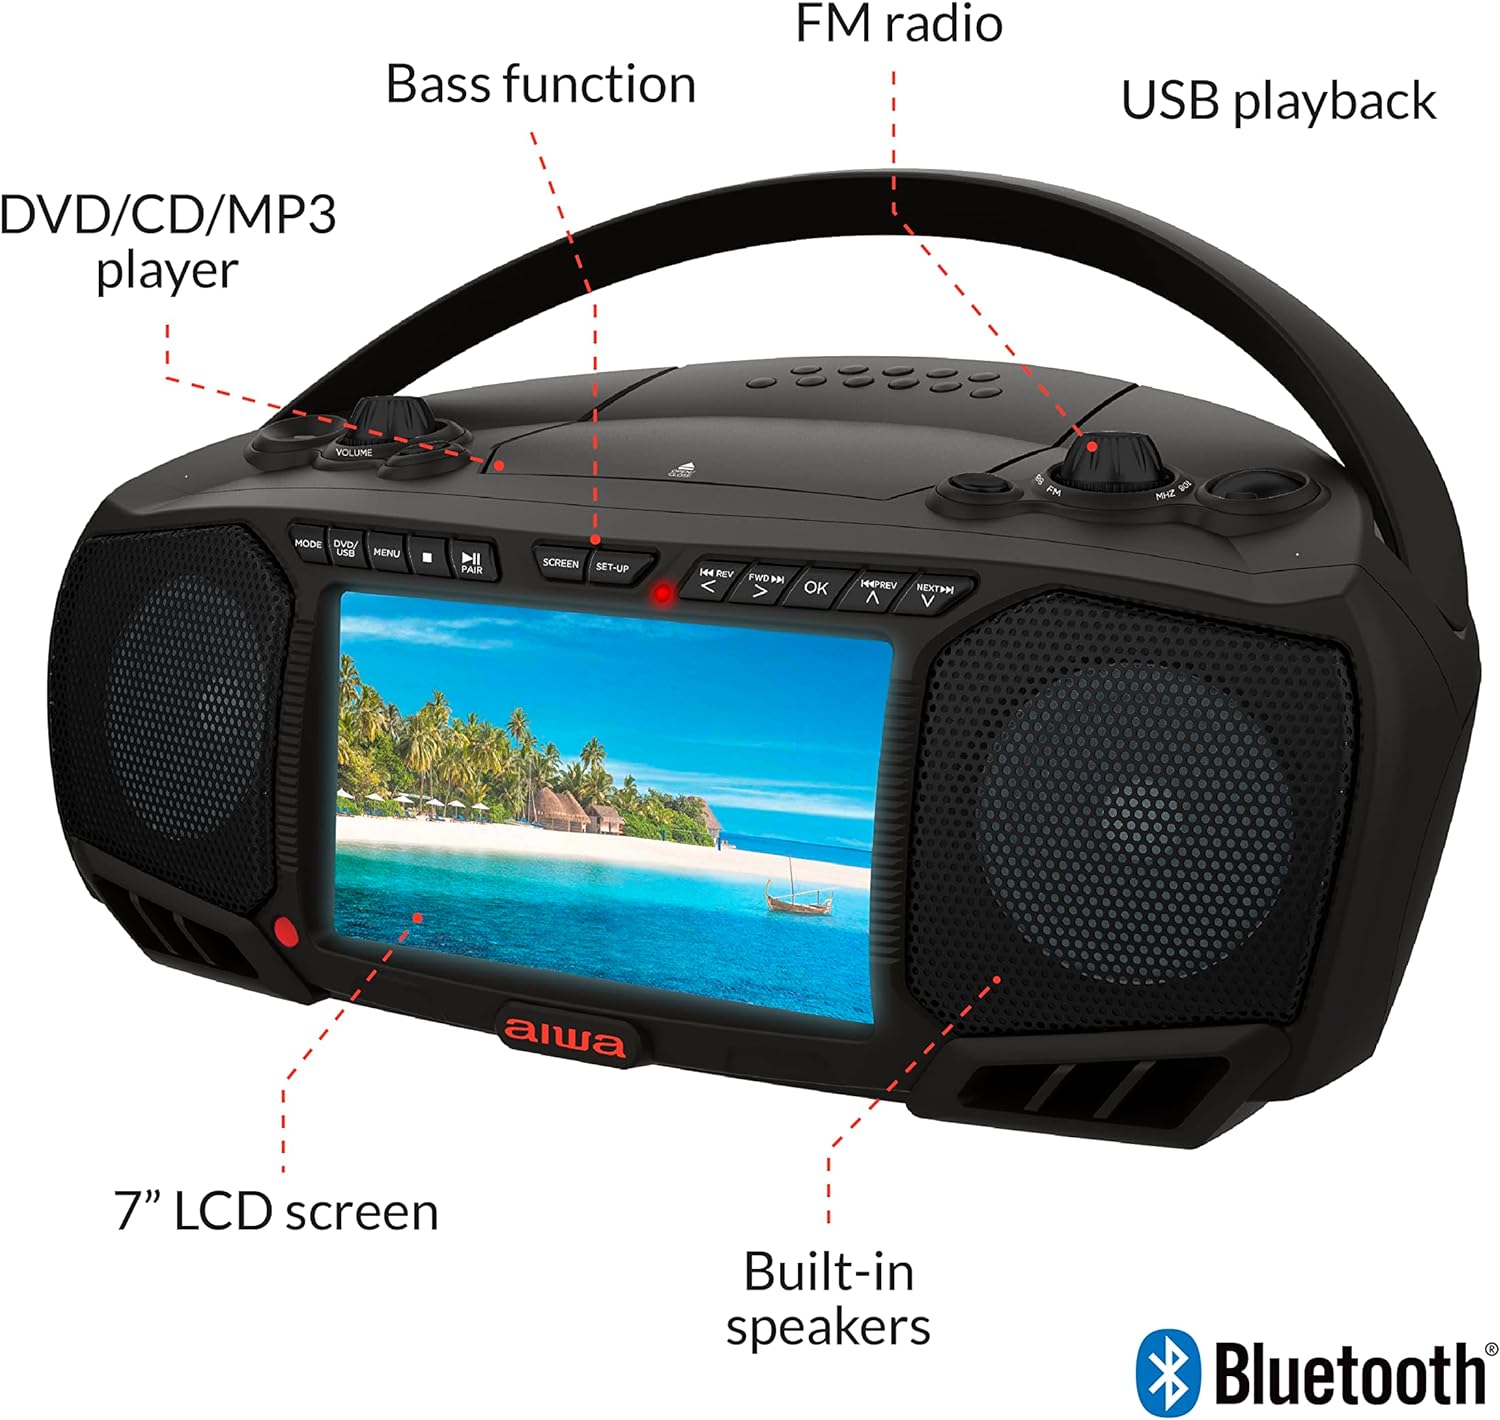 Boombox portátil, sonido cristalino con 3W x 2 altavoces y función de bajos, con una pantalla LCD